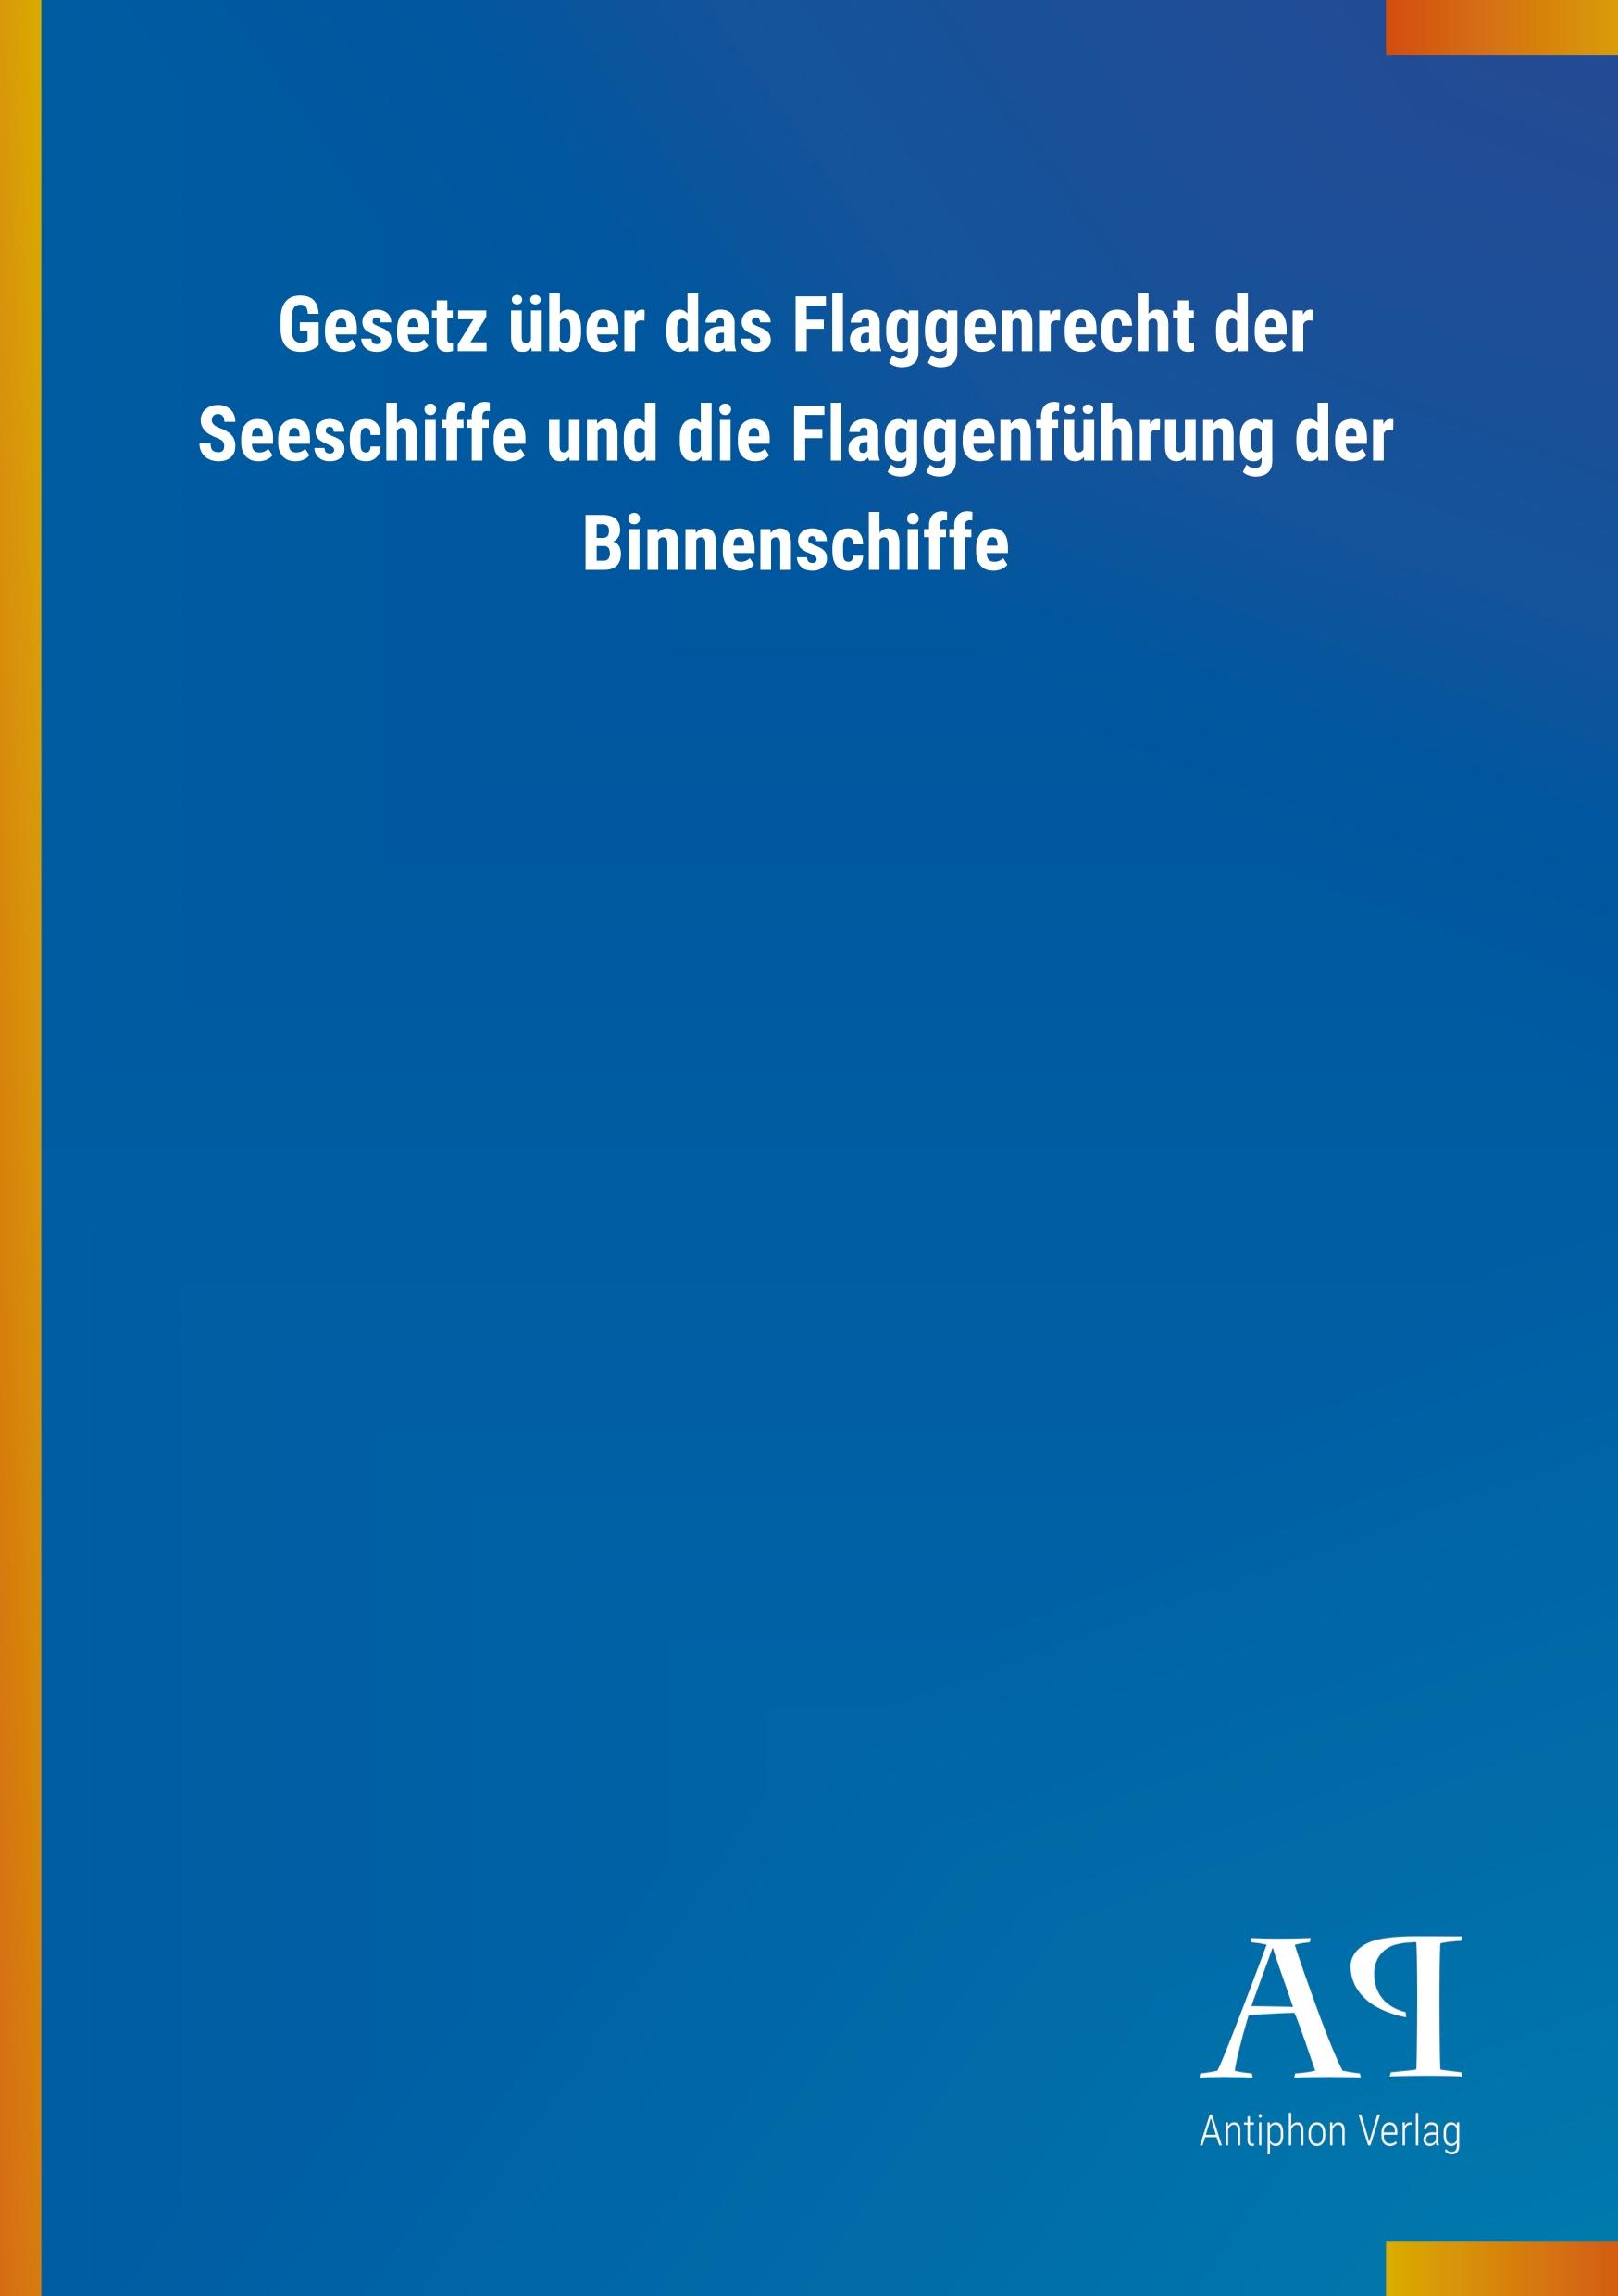 Gesetz ueber das Flaggenrecht der Seeschiffe und die Flaggenfuehrung der Binnenschiffe - Antiphon Verlag